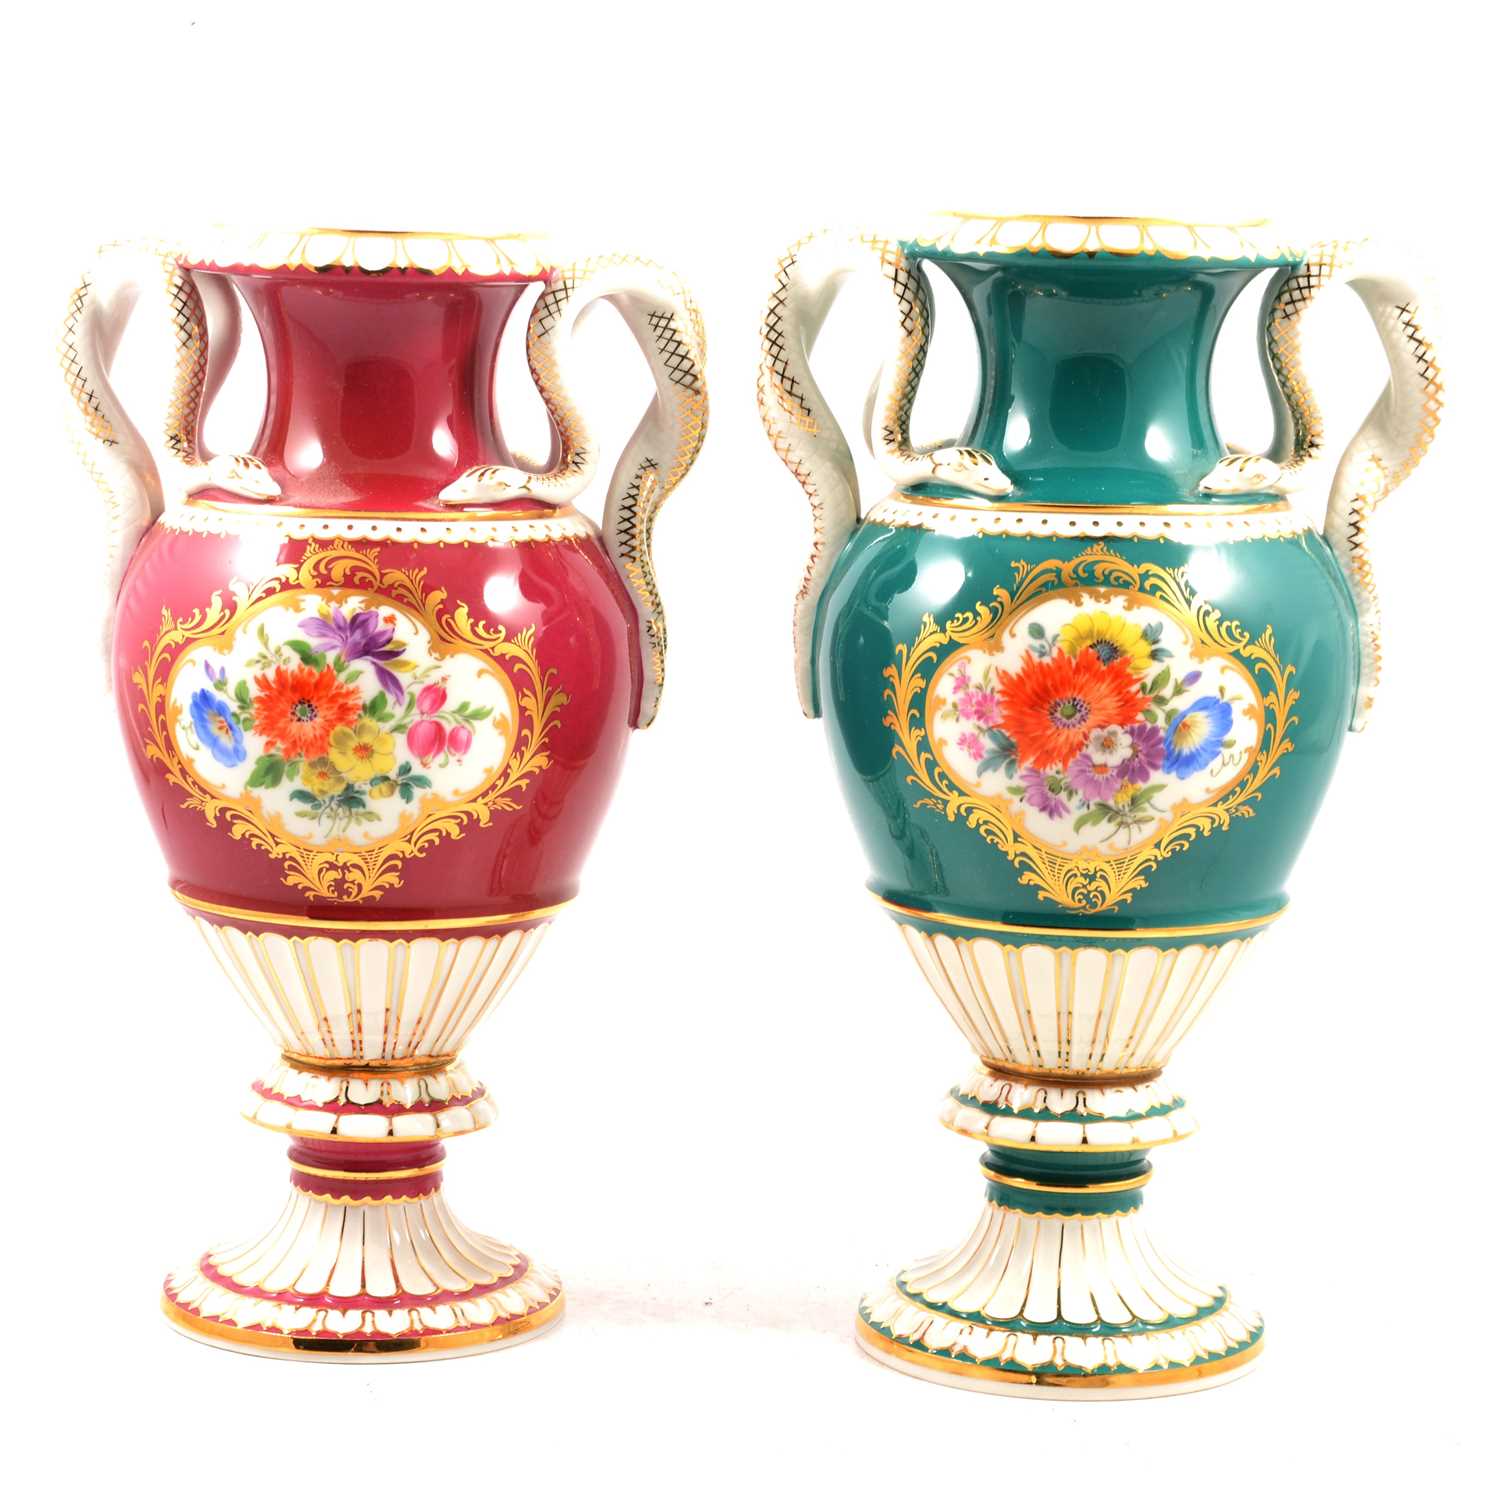 Two similar Meissen snake-handled vases